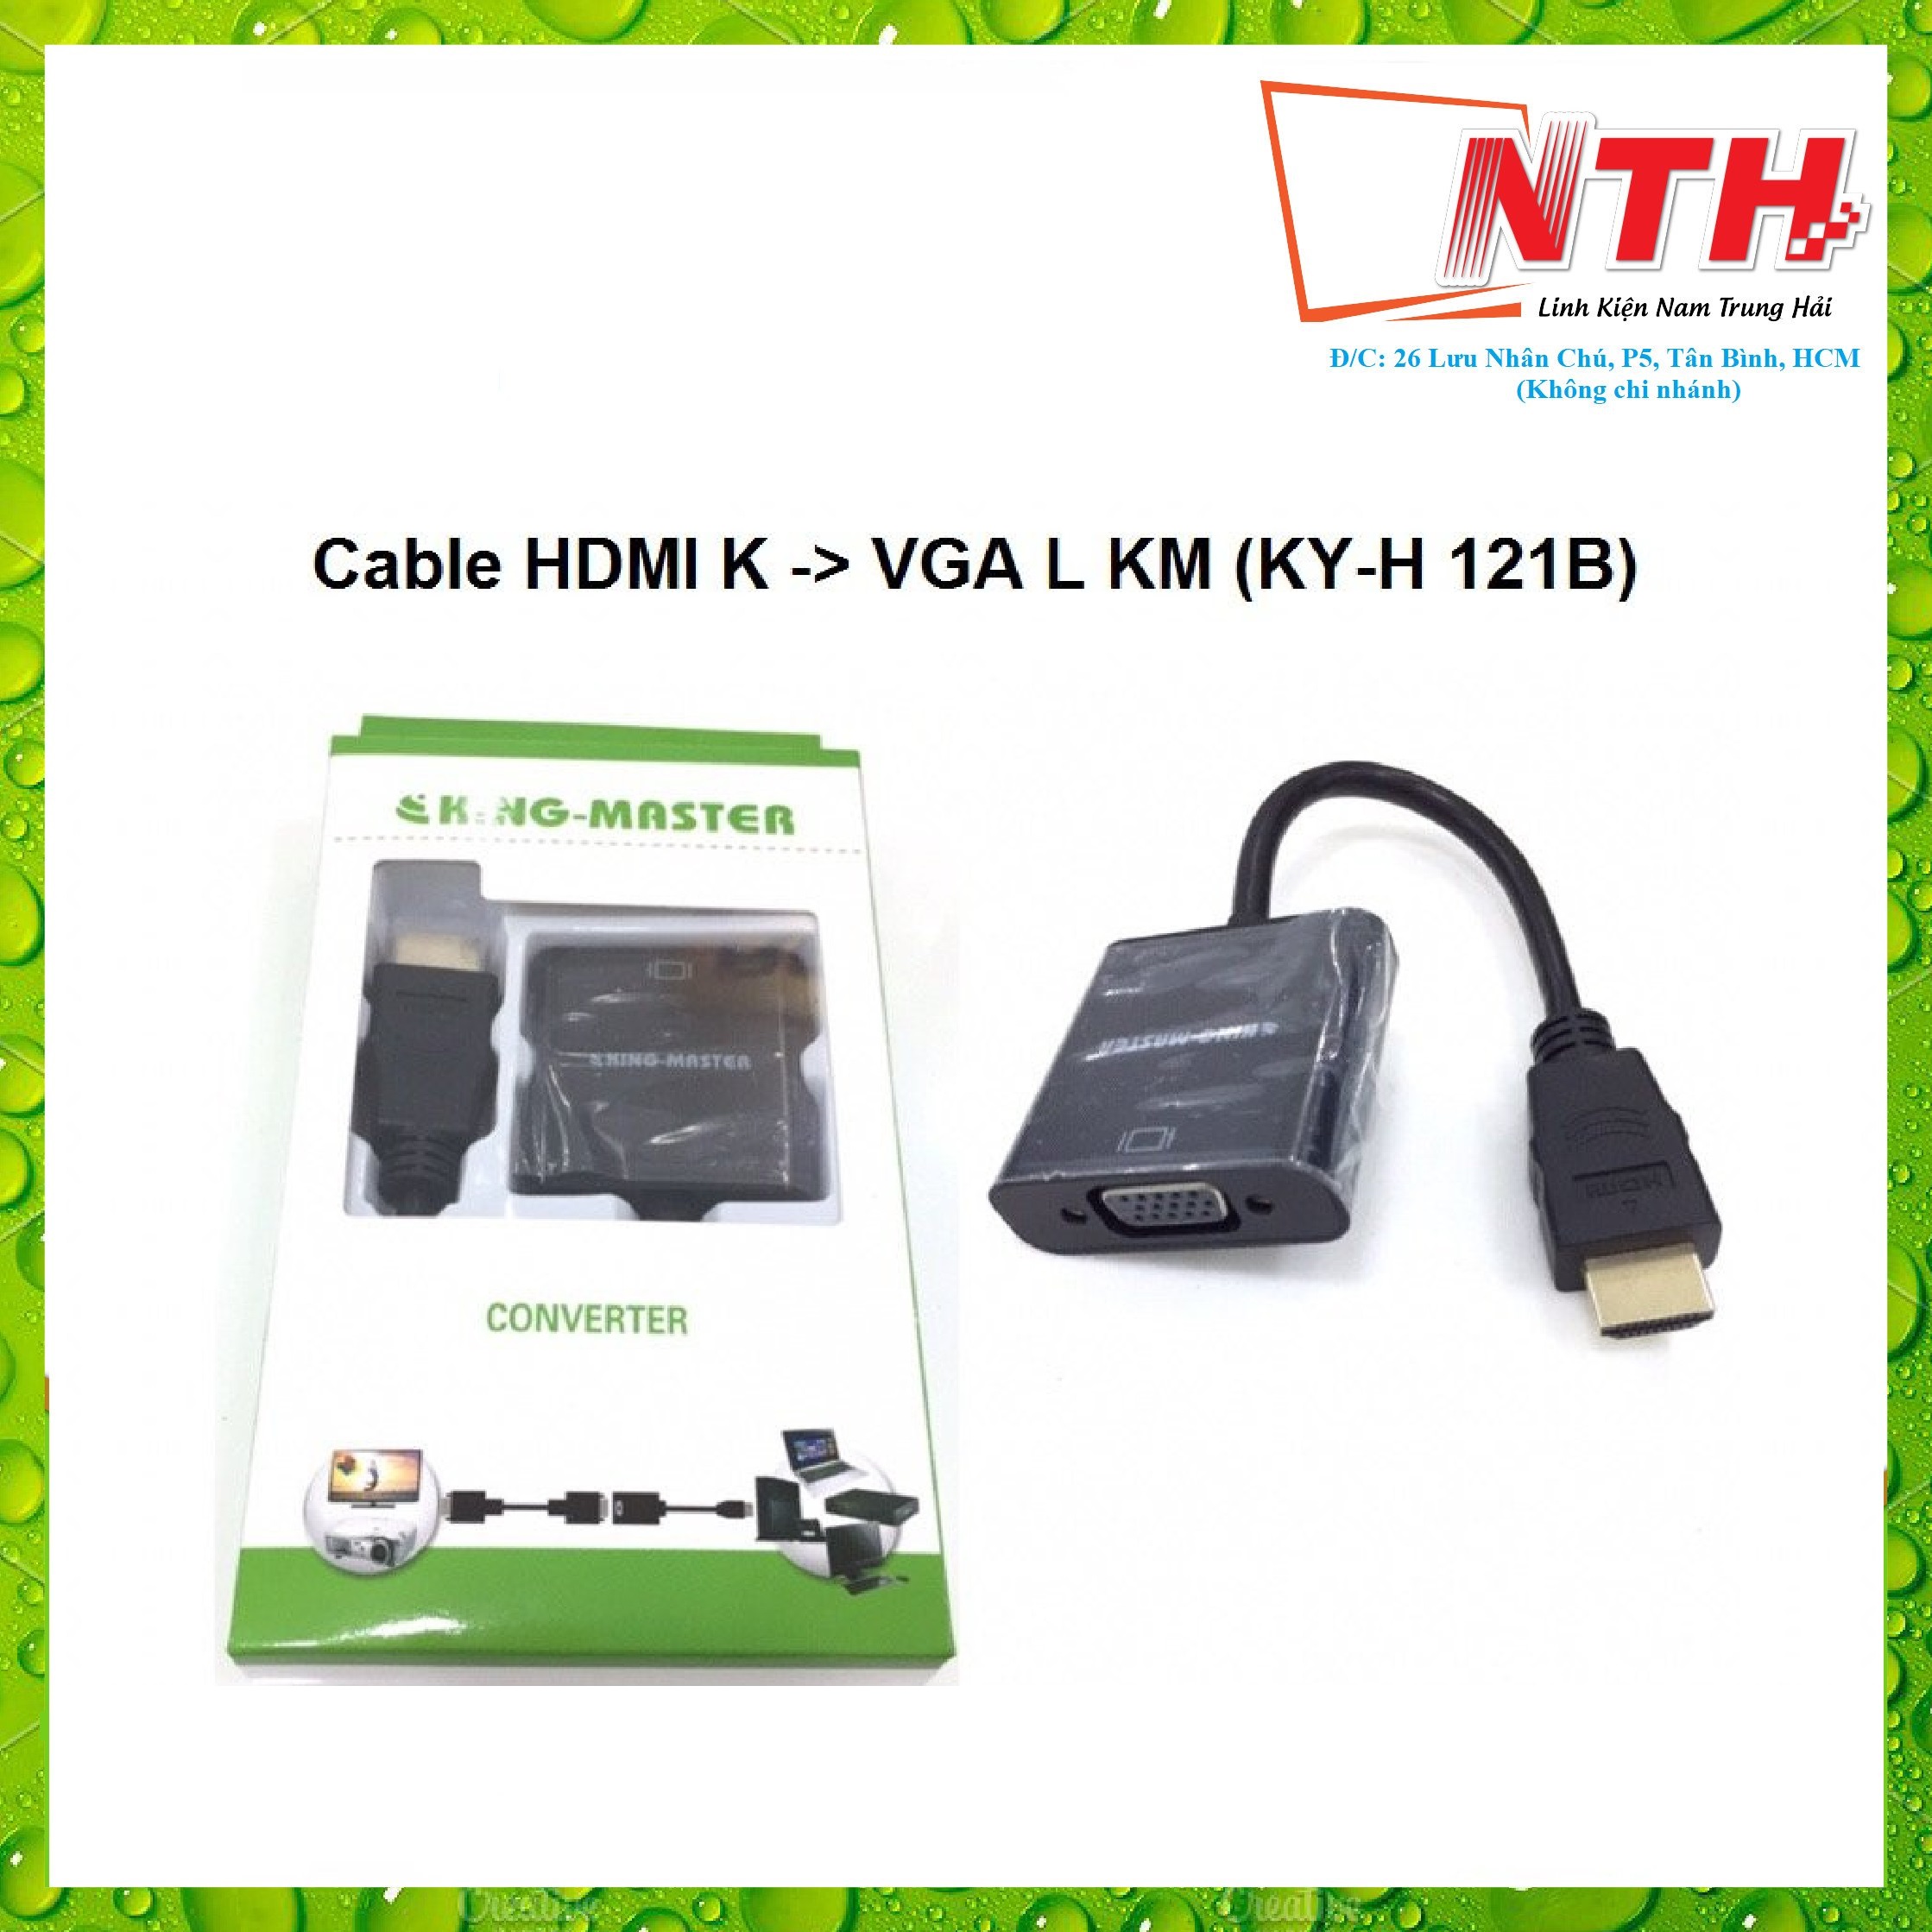 Cáp HDMI K ra VGA L KM (KY-H 121B)